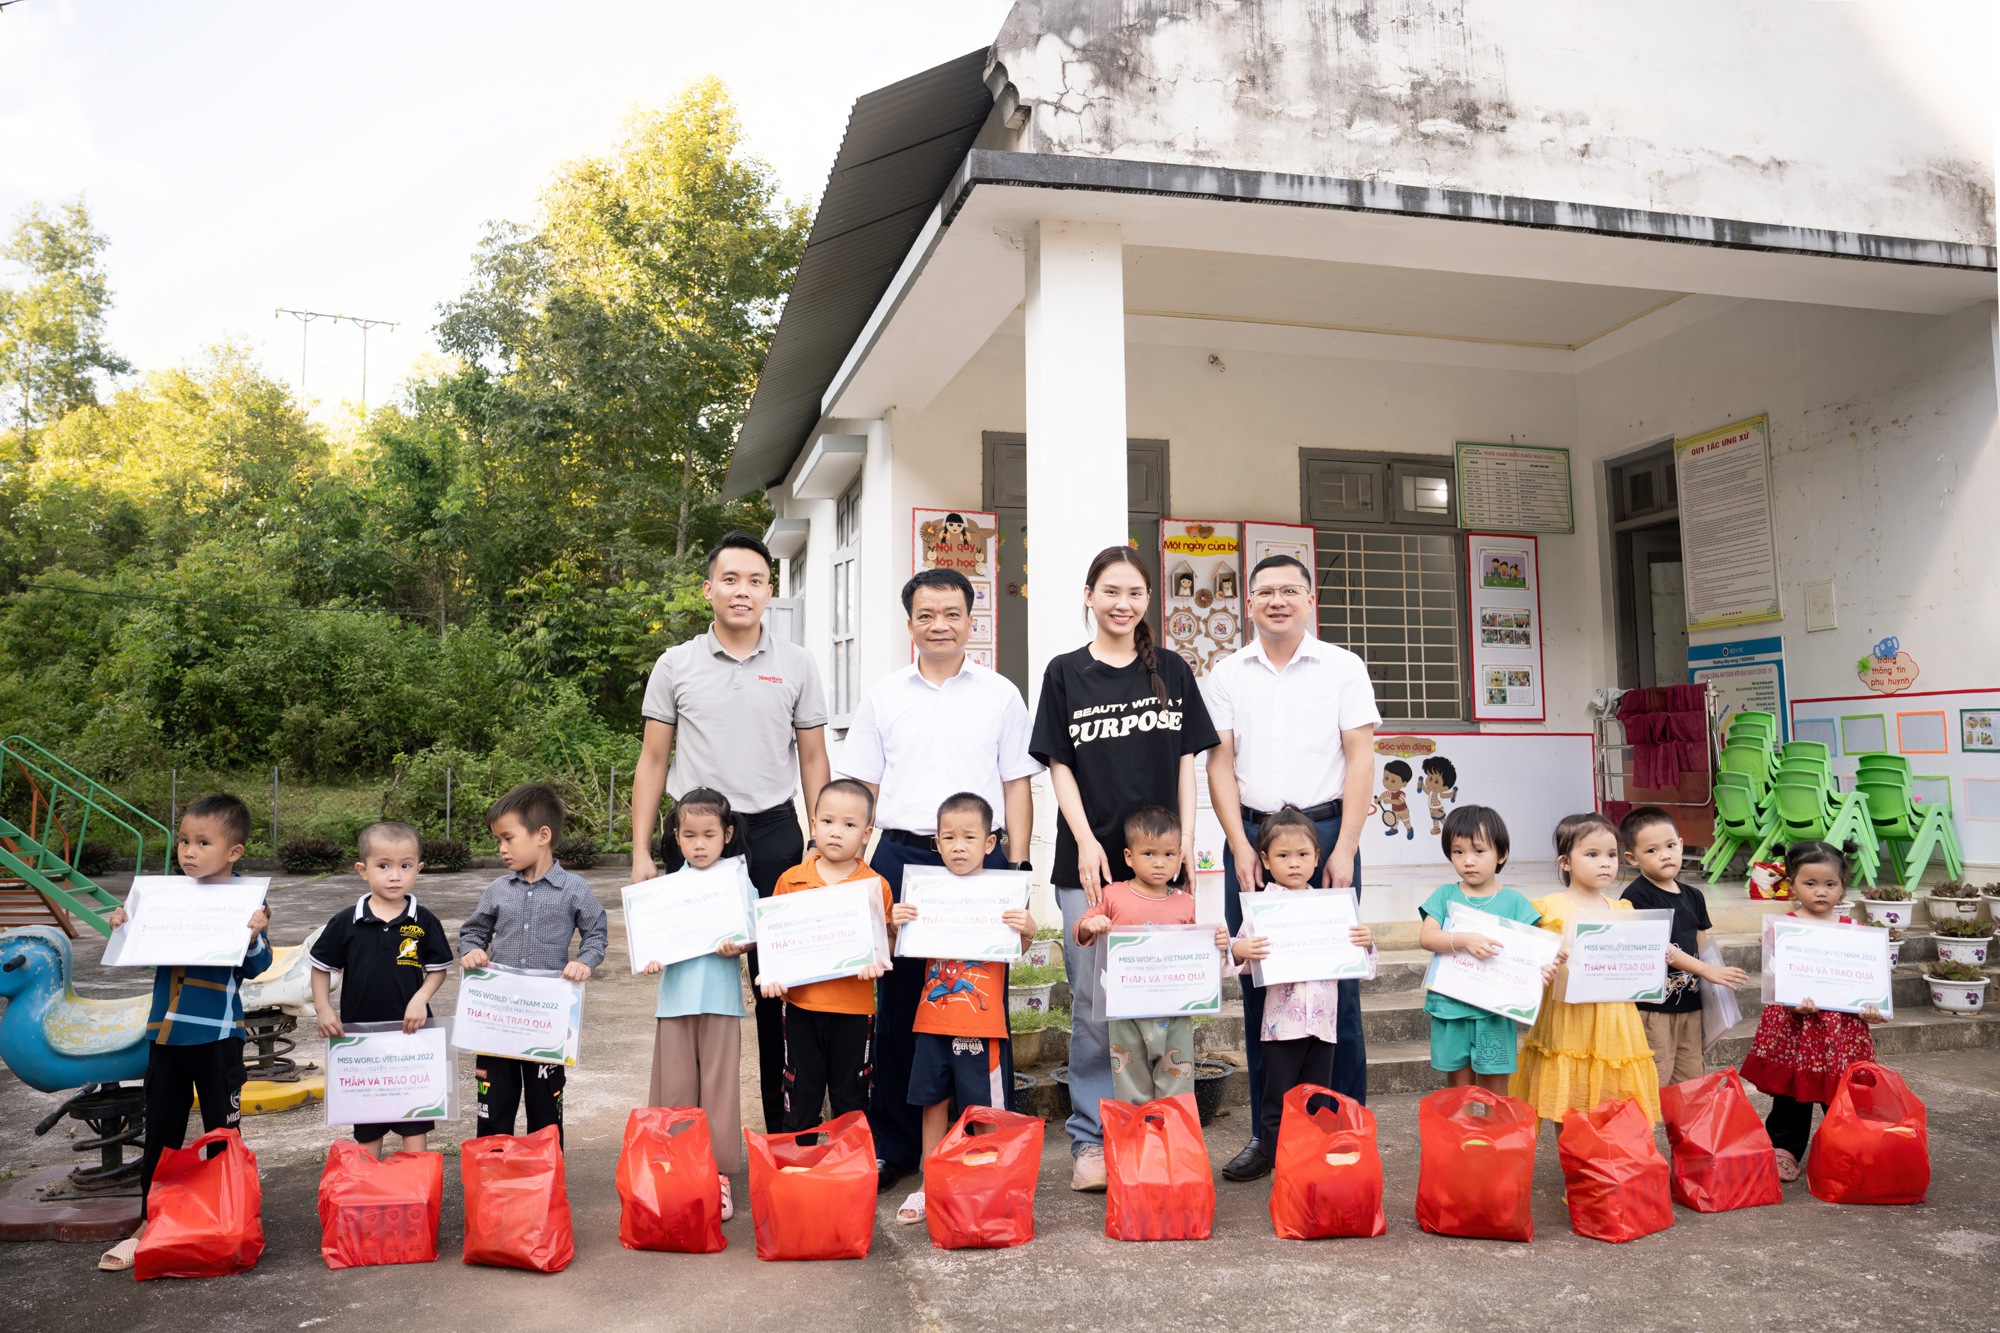 Hoa hậu Mai Phương đến thăm và tặng quà cho học sinh nghèo Bắc Kạn nhân dịp khai giảng - Ảnh 6.